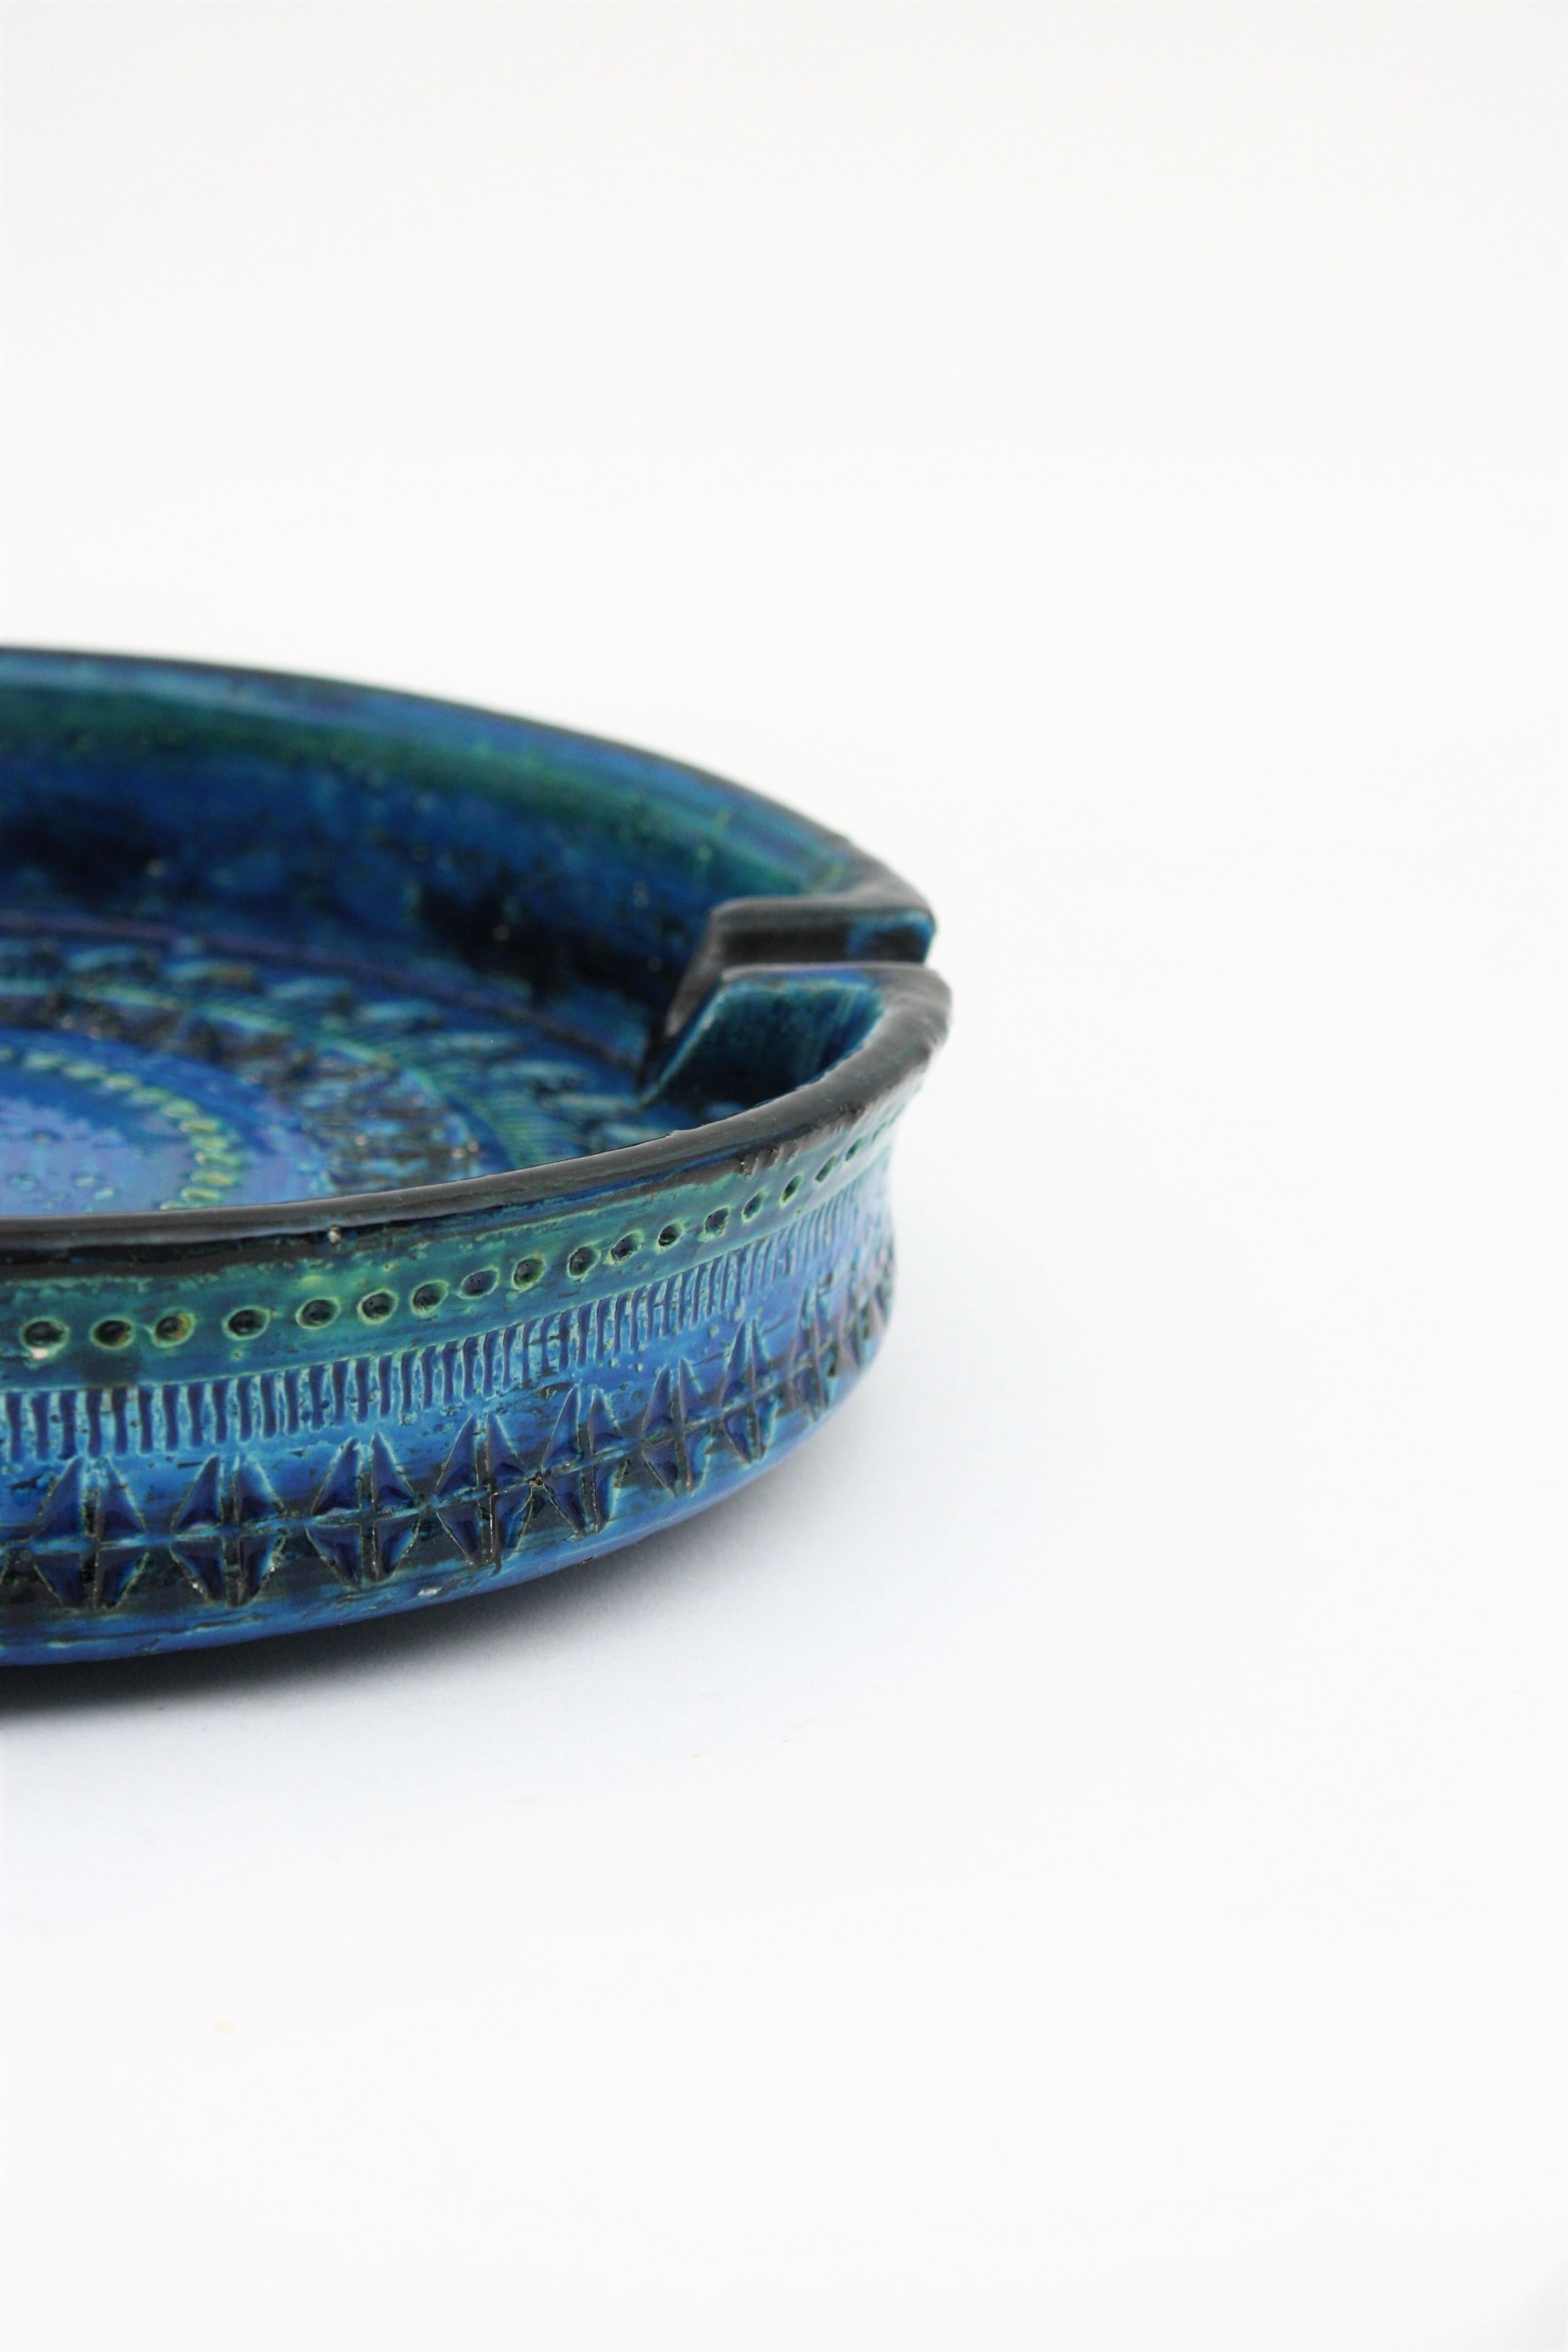 Bitossi Aldo Londi Rimini Blue Ceramic XL Round Centerpiece Bowl Ashtray For Sale 1